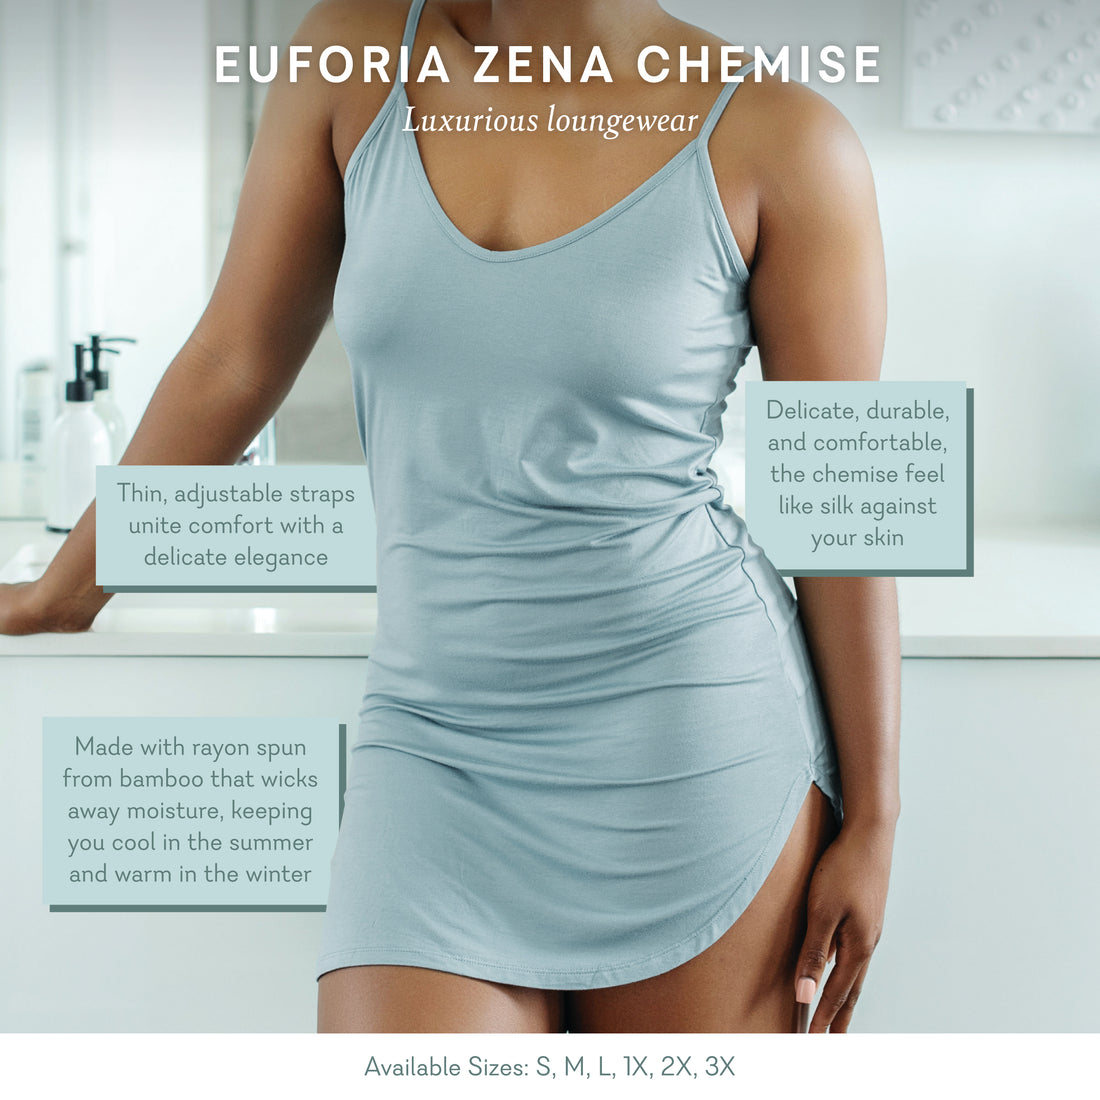 Euforia Zena Chemise